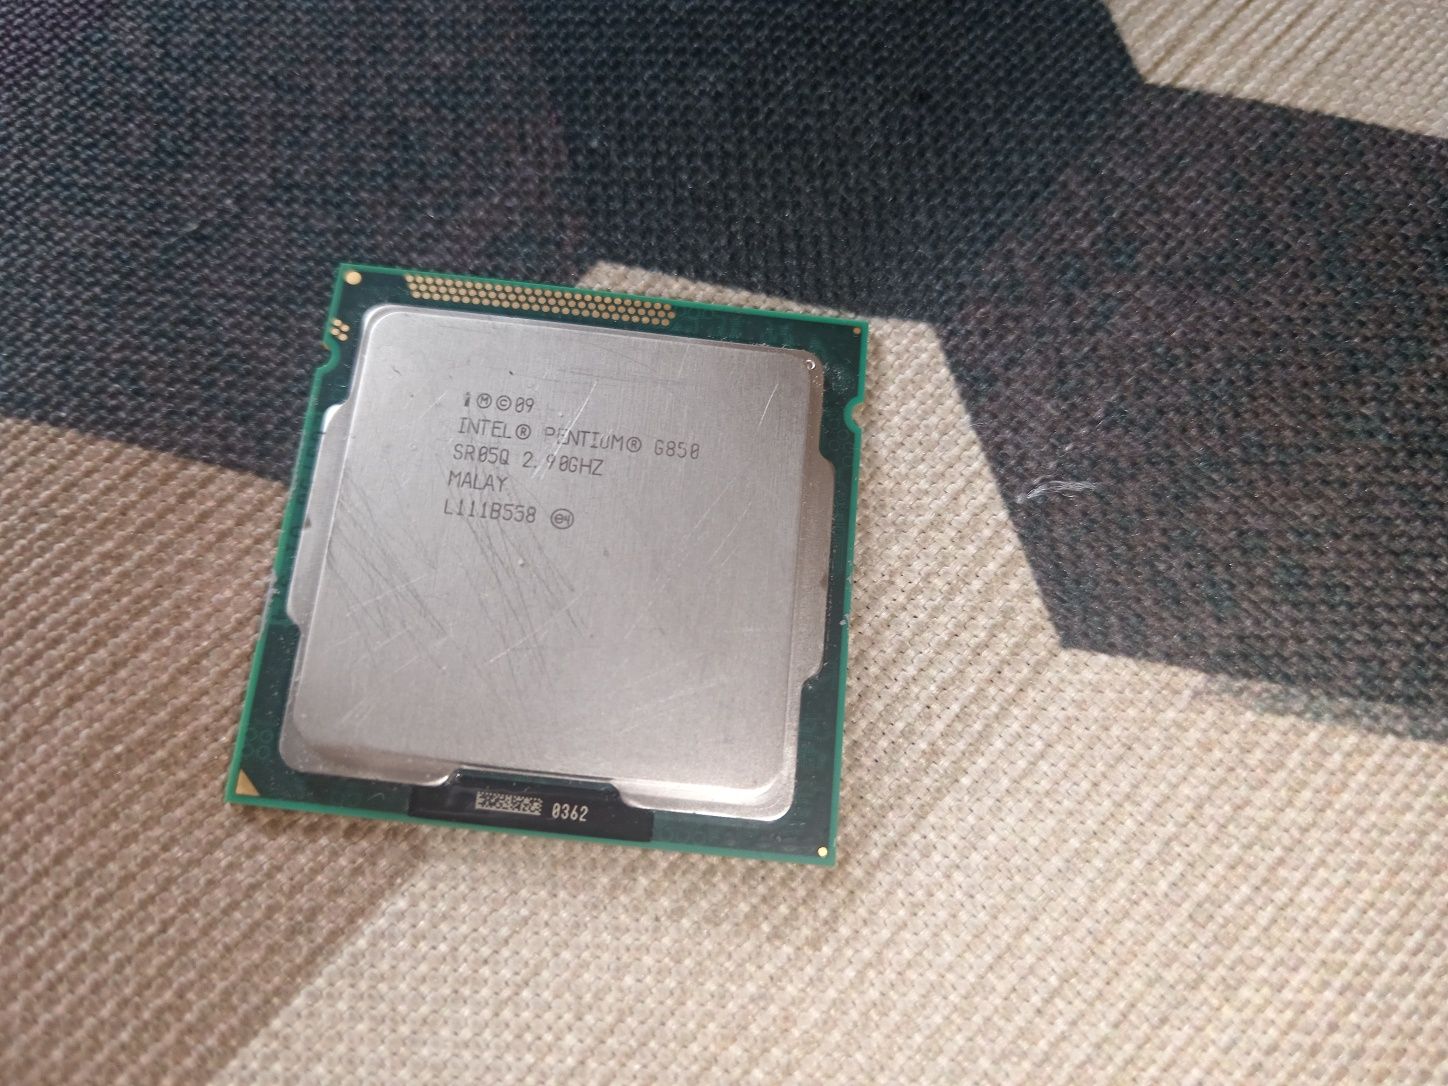 Intel pentium G850 2.9GHZ